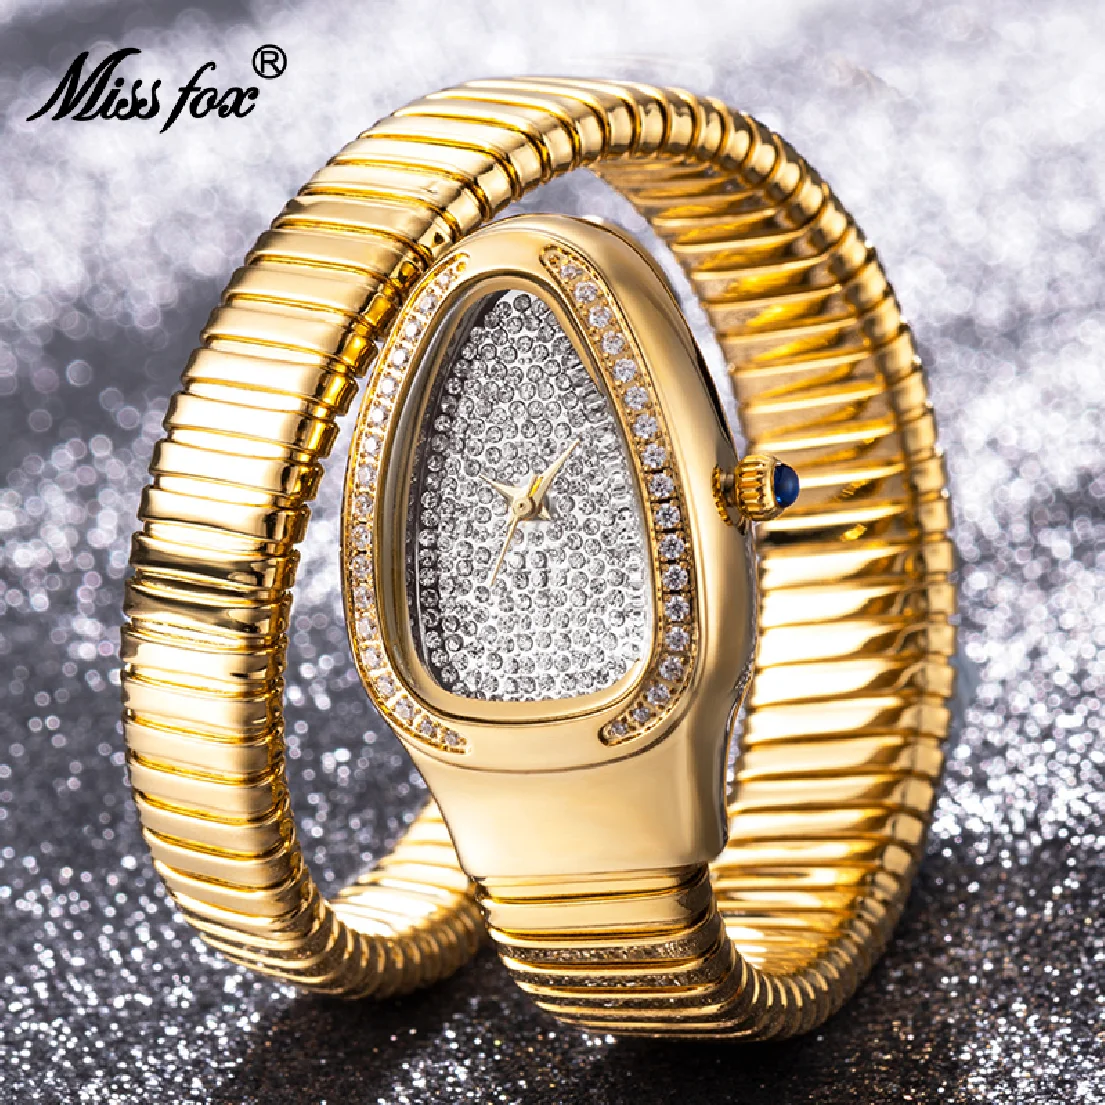 

Часы MISSFOX женские кварцевые с алмазным циферблатом, Элегантные классические наручные, аксессуары для вечеринок, ювелирные изделия